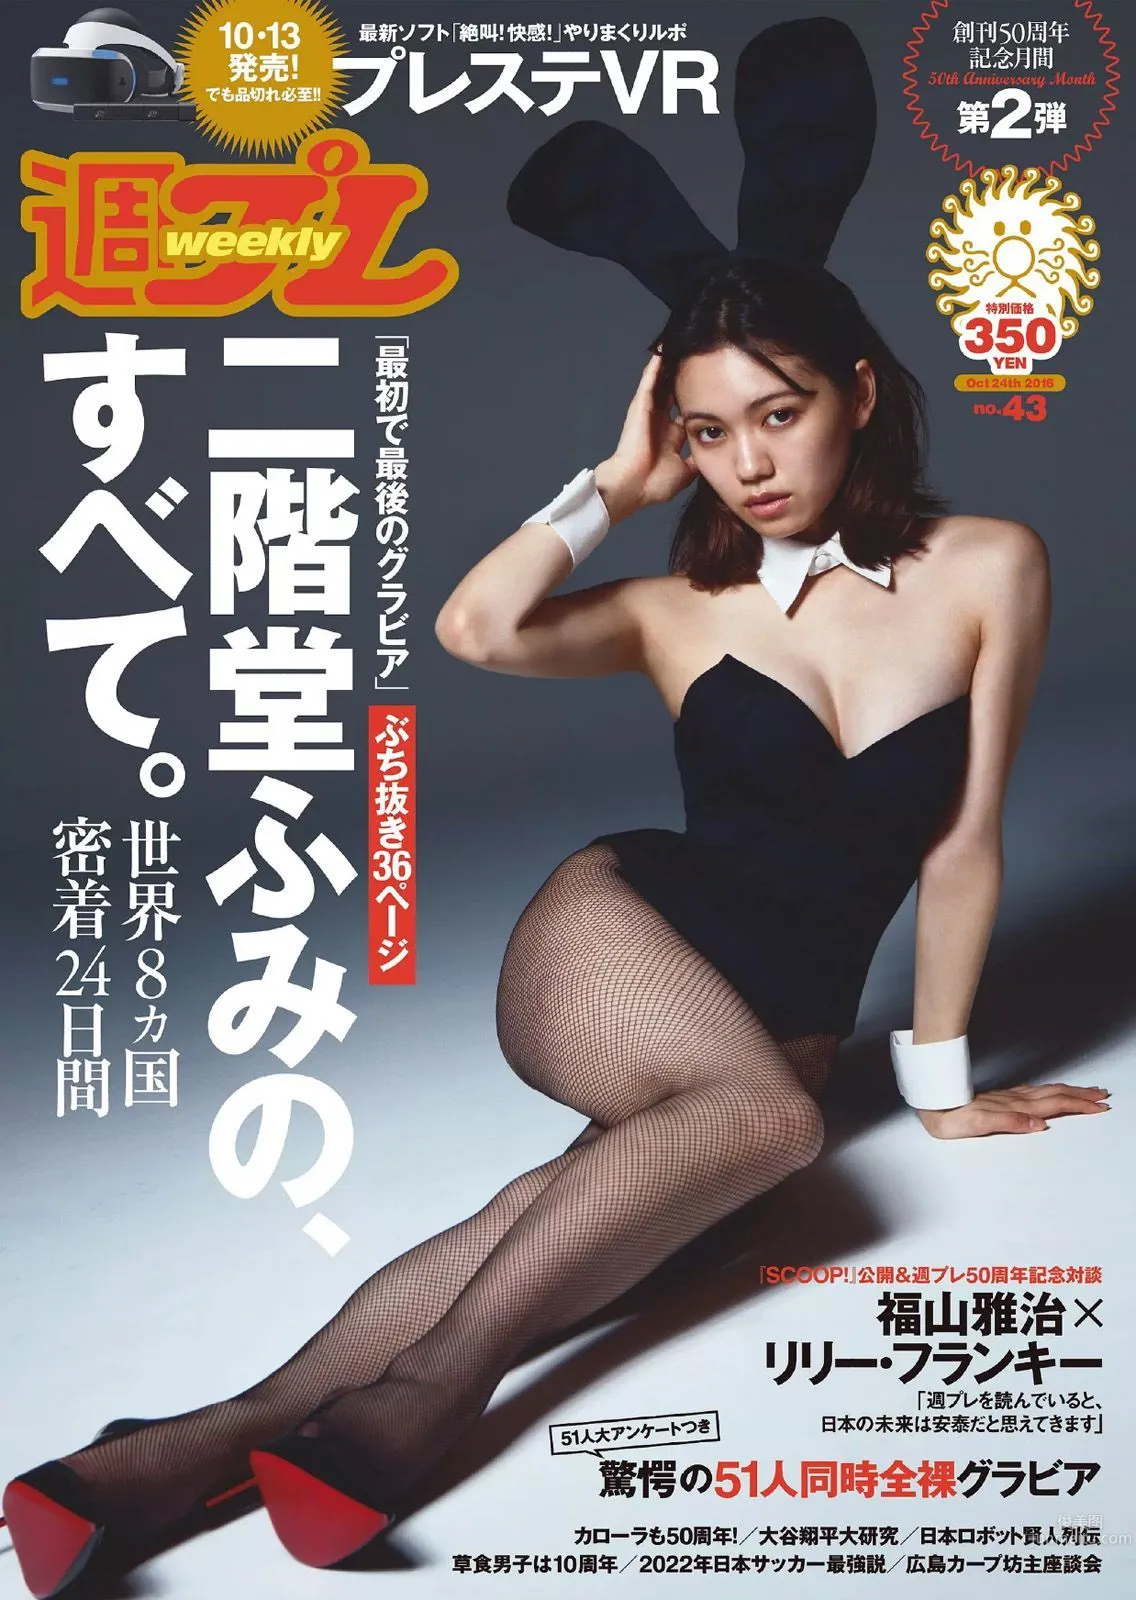 二階堂ふみ [Weekly Playboy] 2016年No.43 写真杂志1